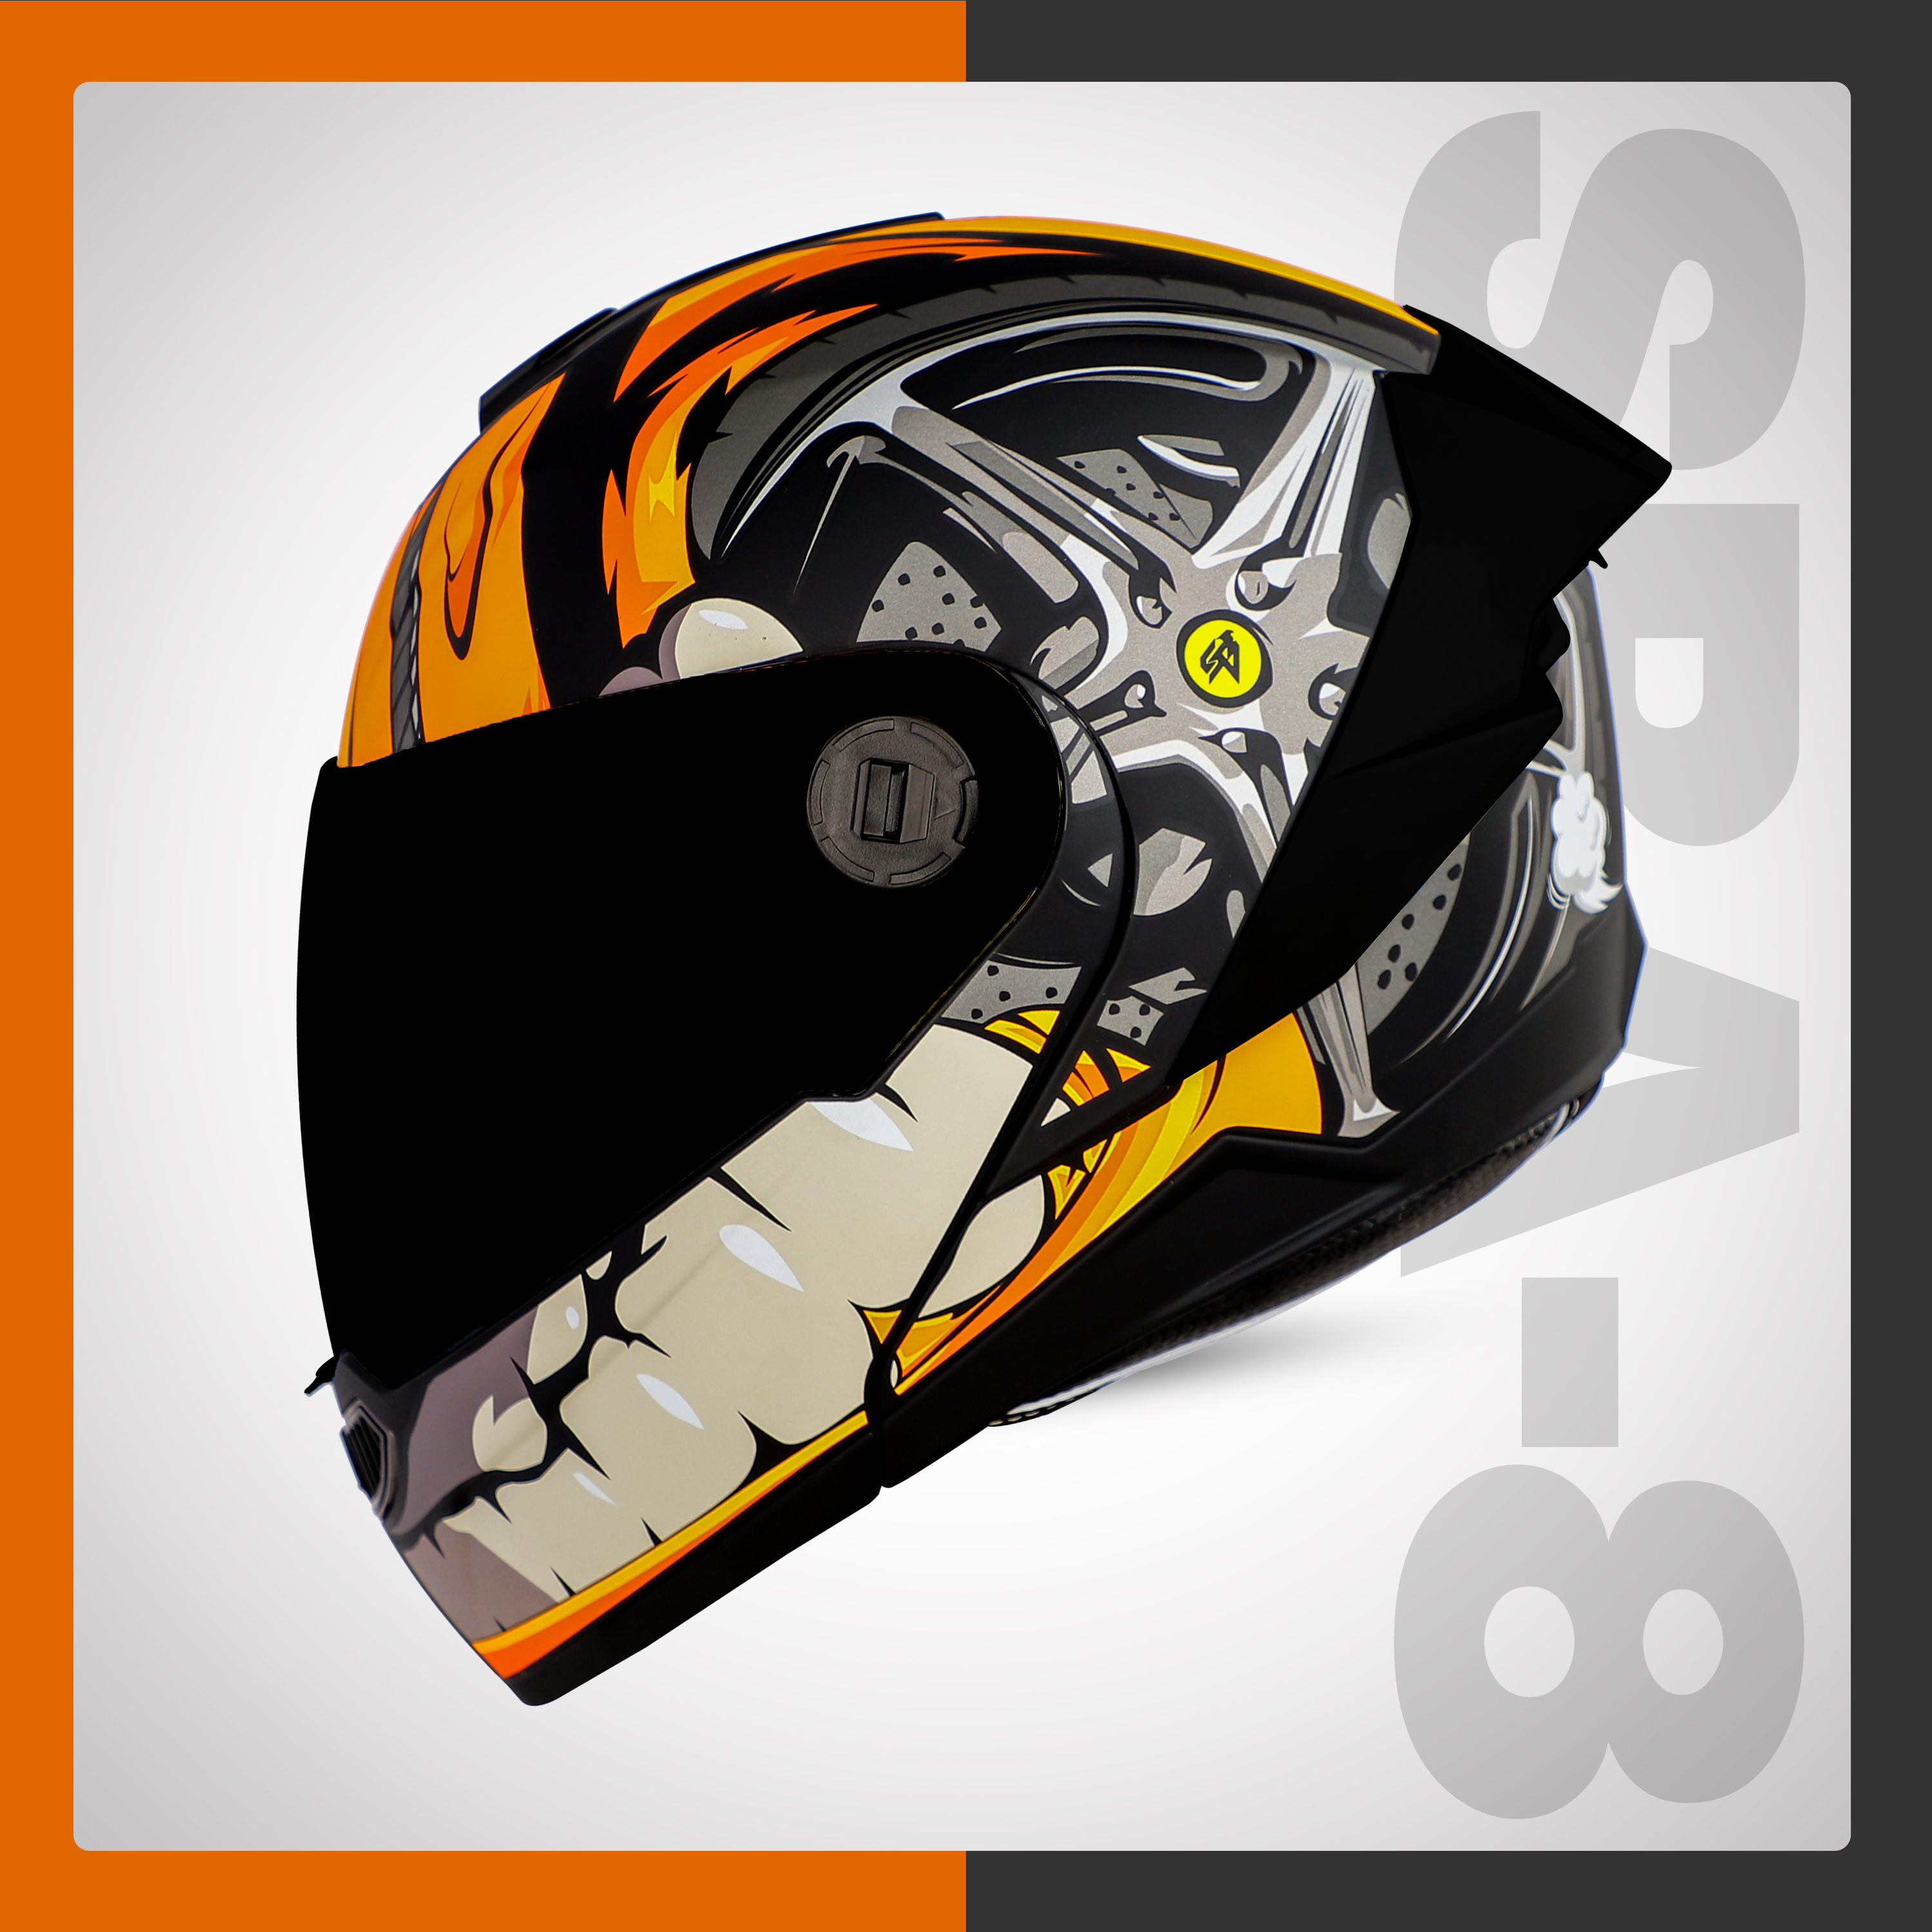 Steelbird SBA-8 Crazy Wheel ISI Certified Flip-Up Helmet For Men And Women (Matt Black Orange With Smoke Visor)